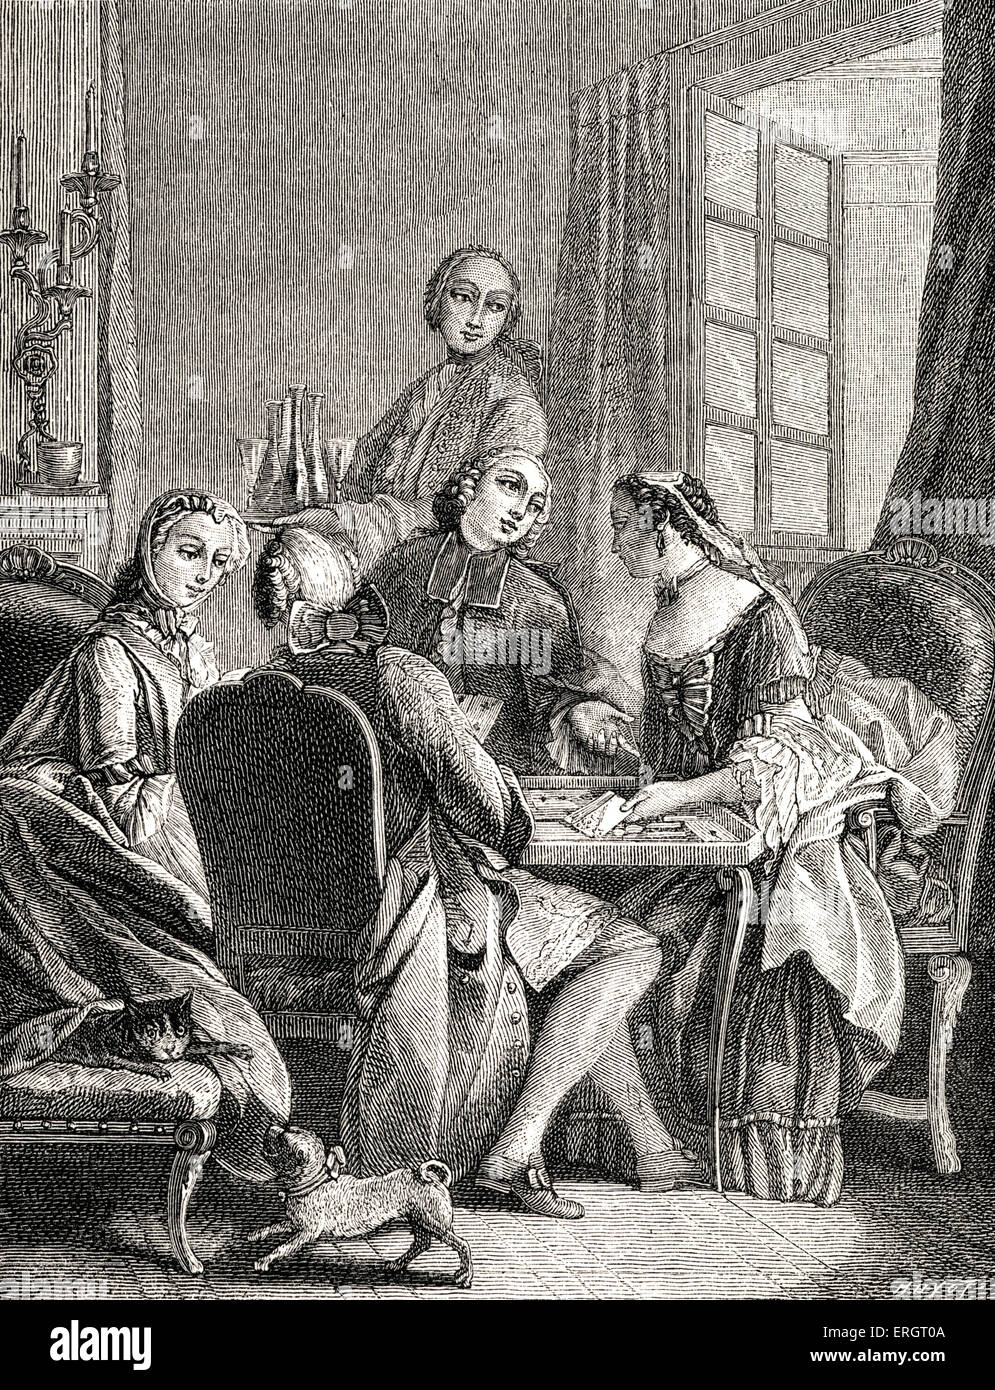 La vida cotidiana en la historia de Francia: la aristocracia jugando un juego del cometa alrededor de una mesa de cartas. Juegos de cartas, juegos, alta sociedad, Foto de stock